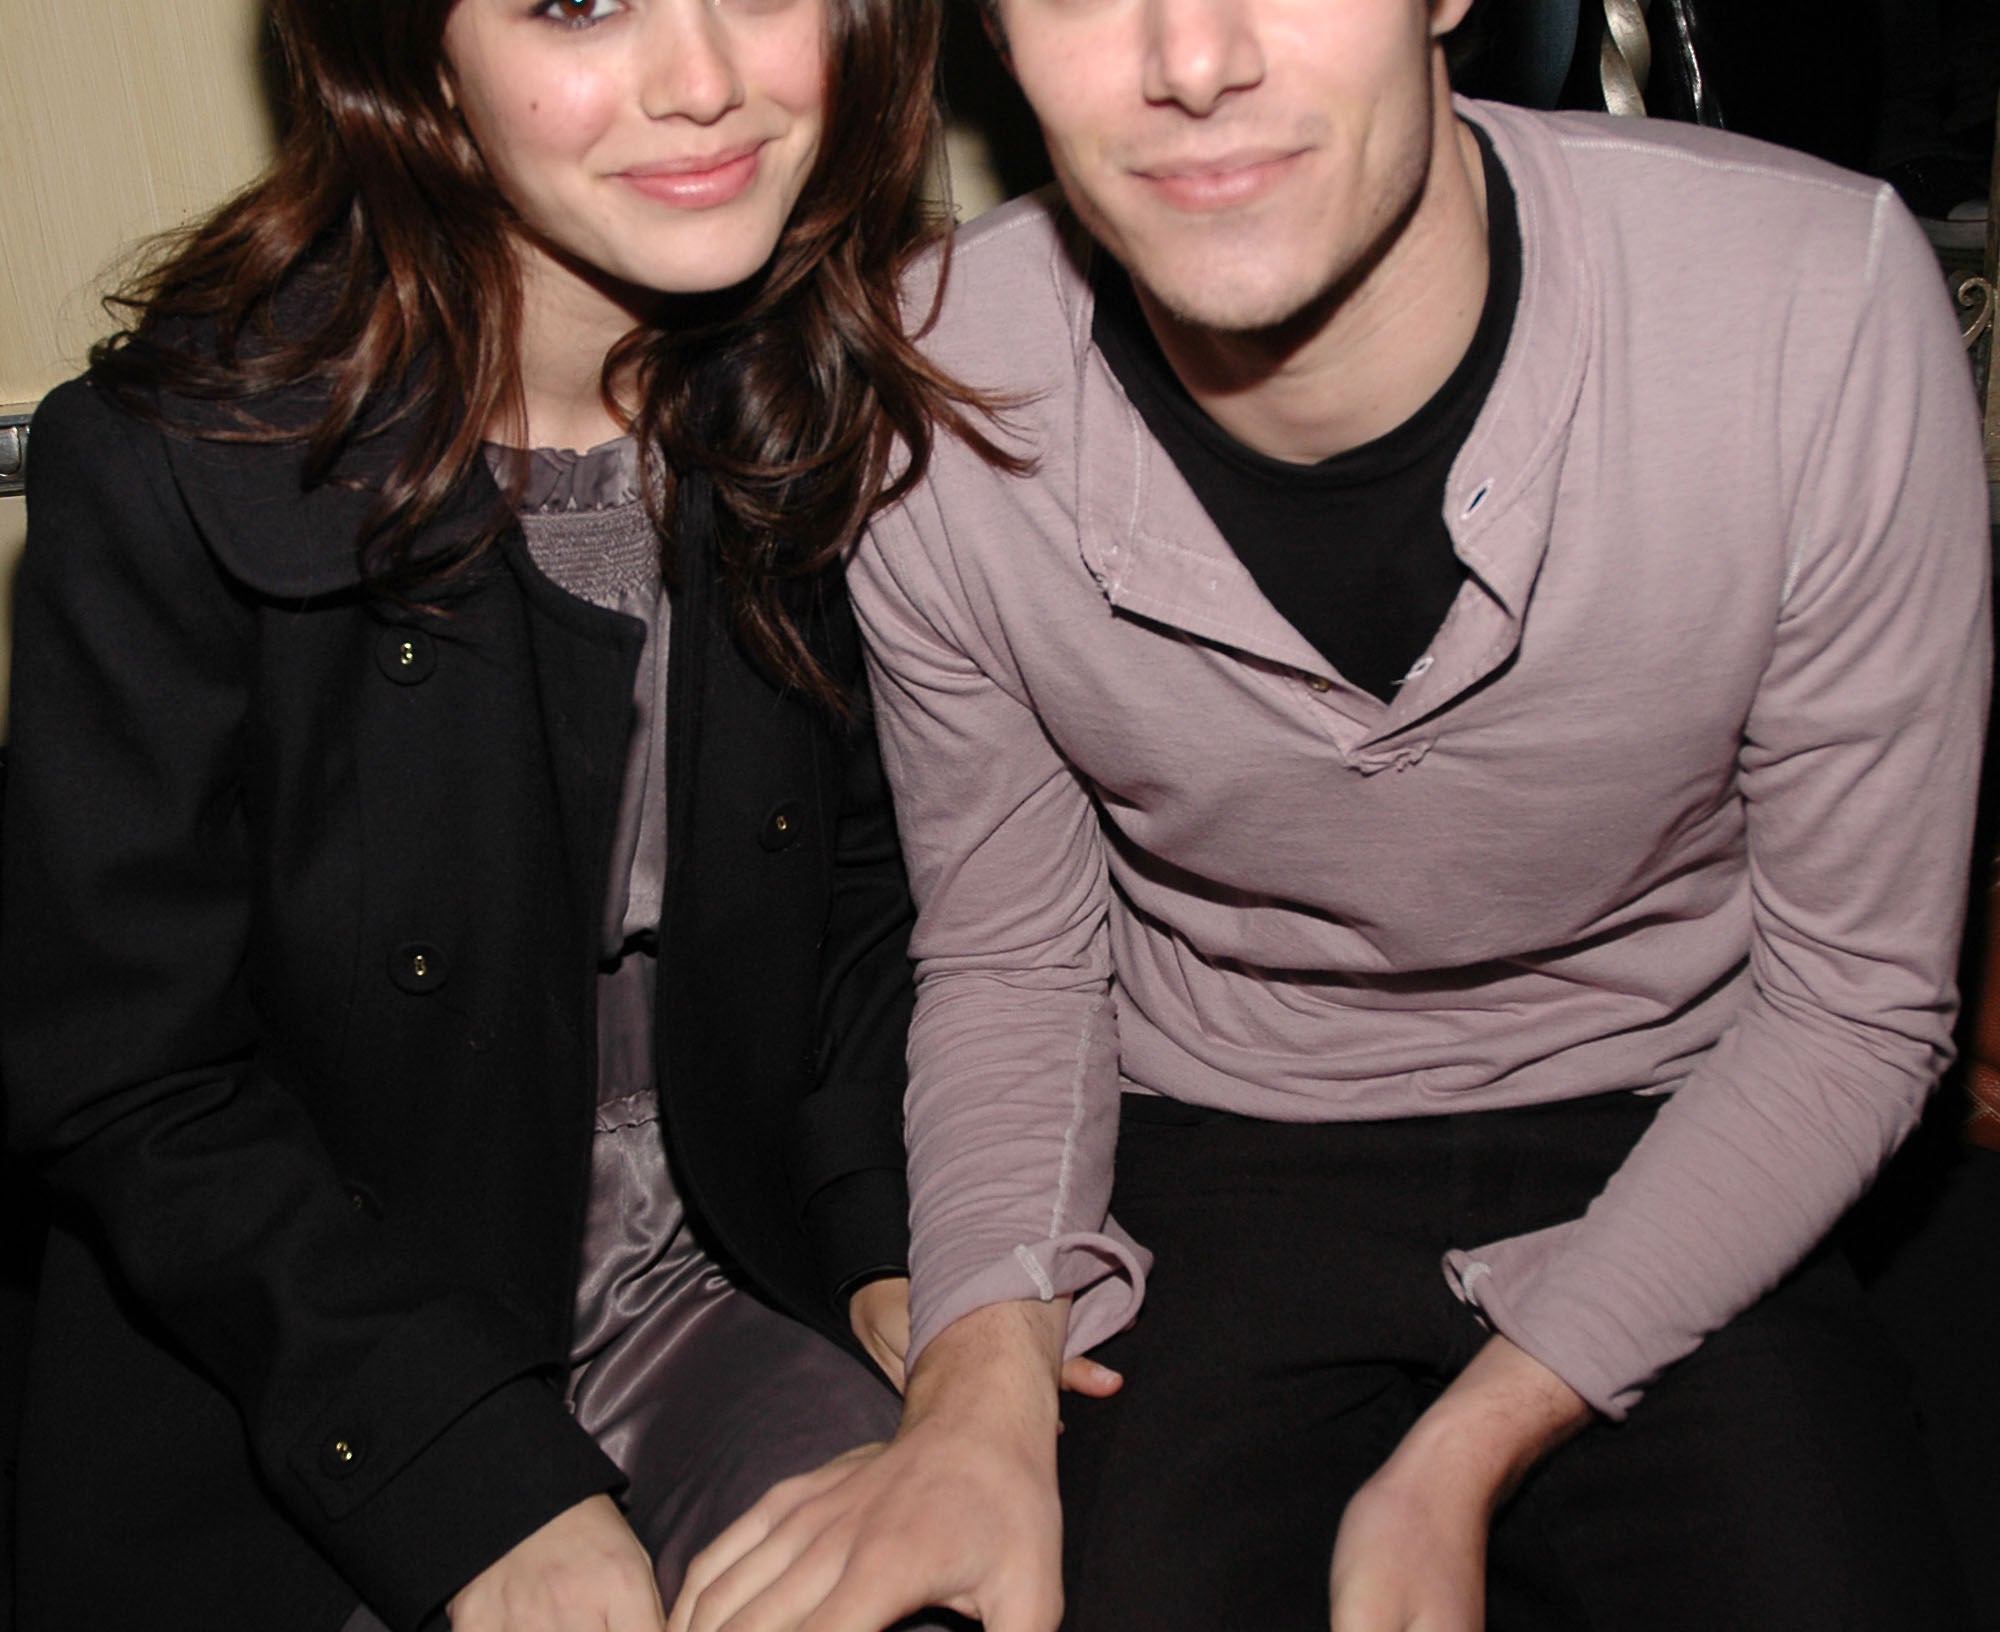 Rachel and Adam look happy together